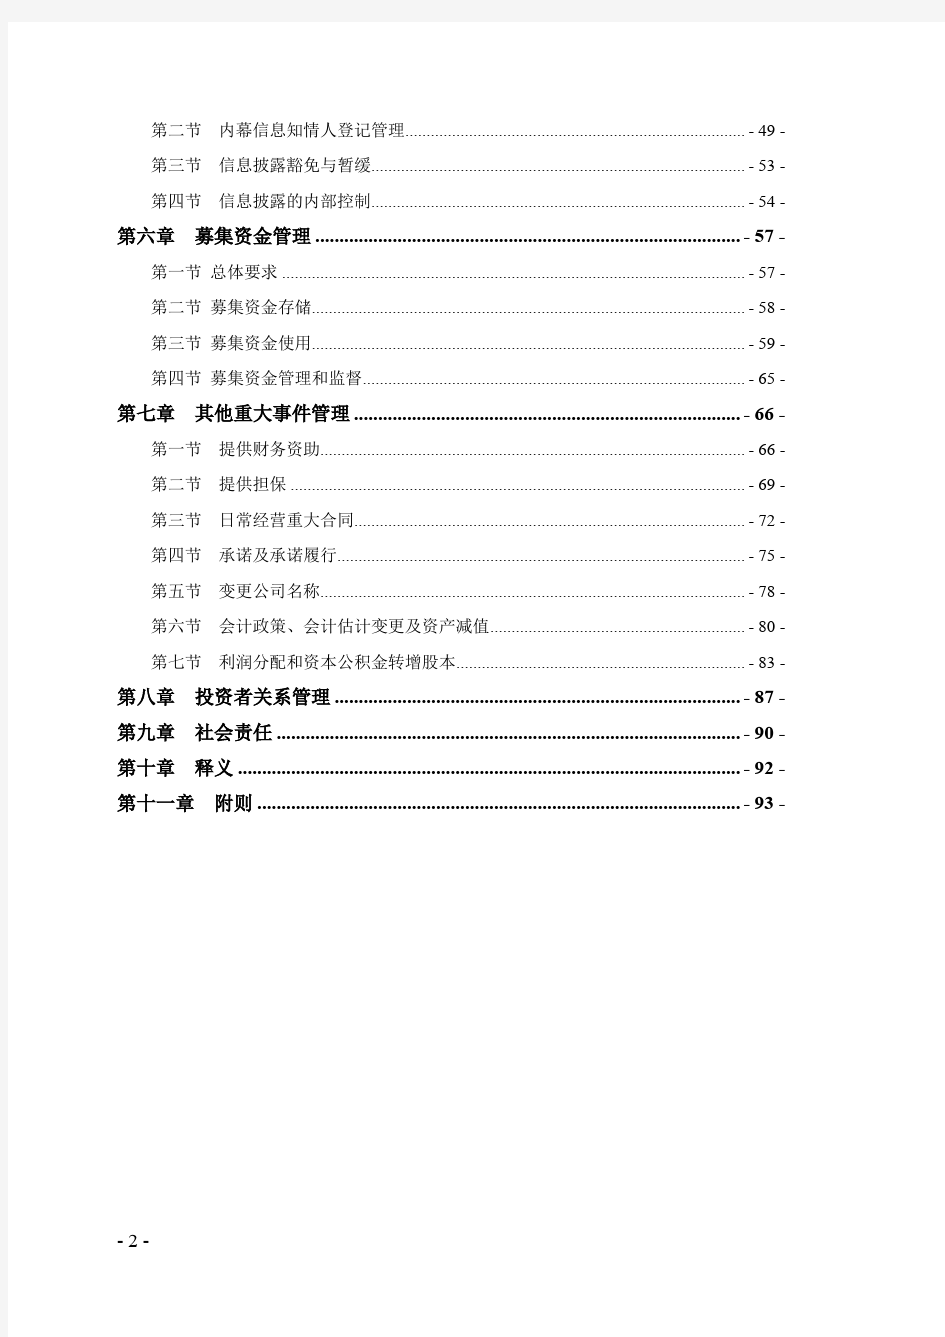 《深圳证券交易所创业板上市公司规范运作指引(2020年修订)》